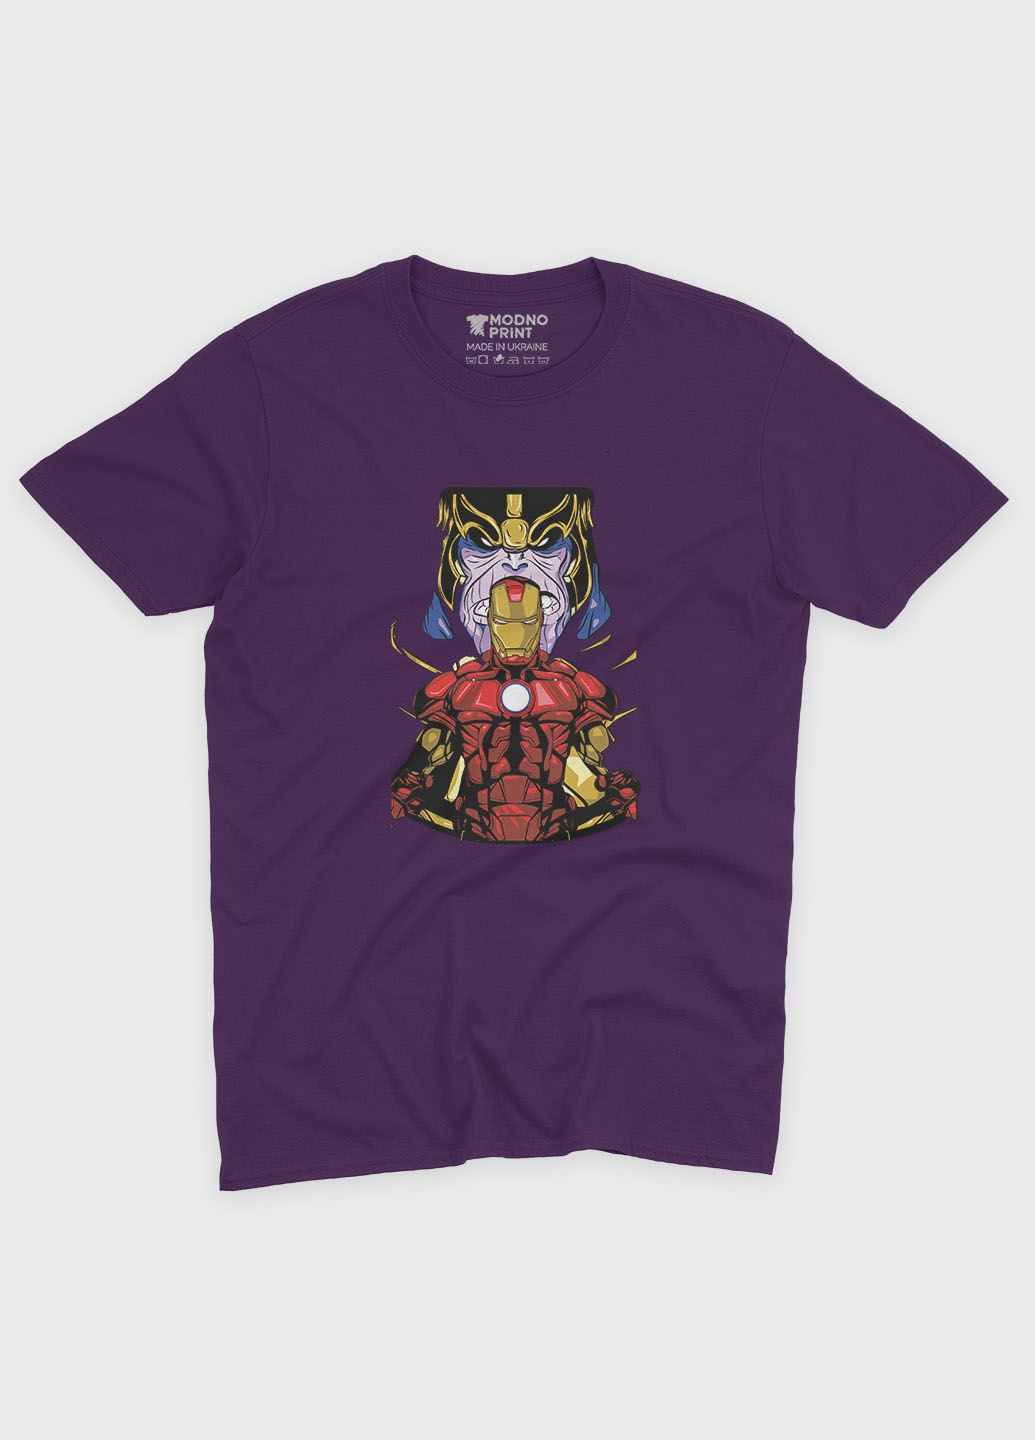 Фиолетовая демисезонная футболка для девочки с принтом супергероя - железный человек (ts001-1-dby-006-016-023-g) Modno